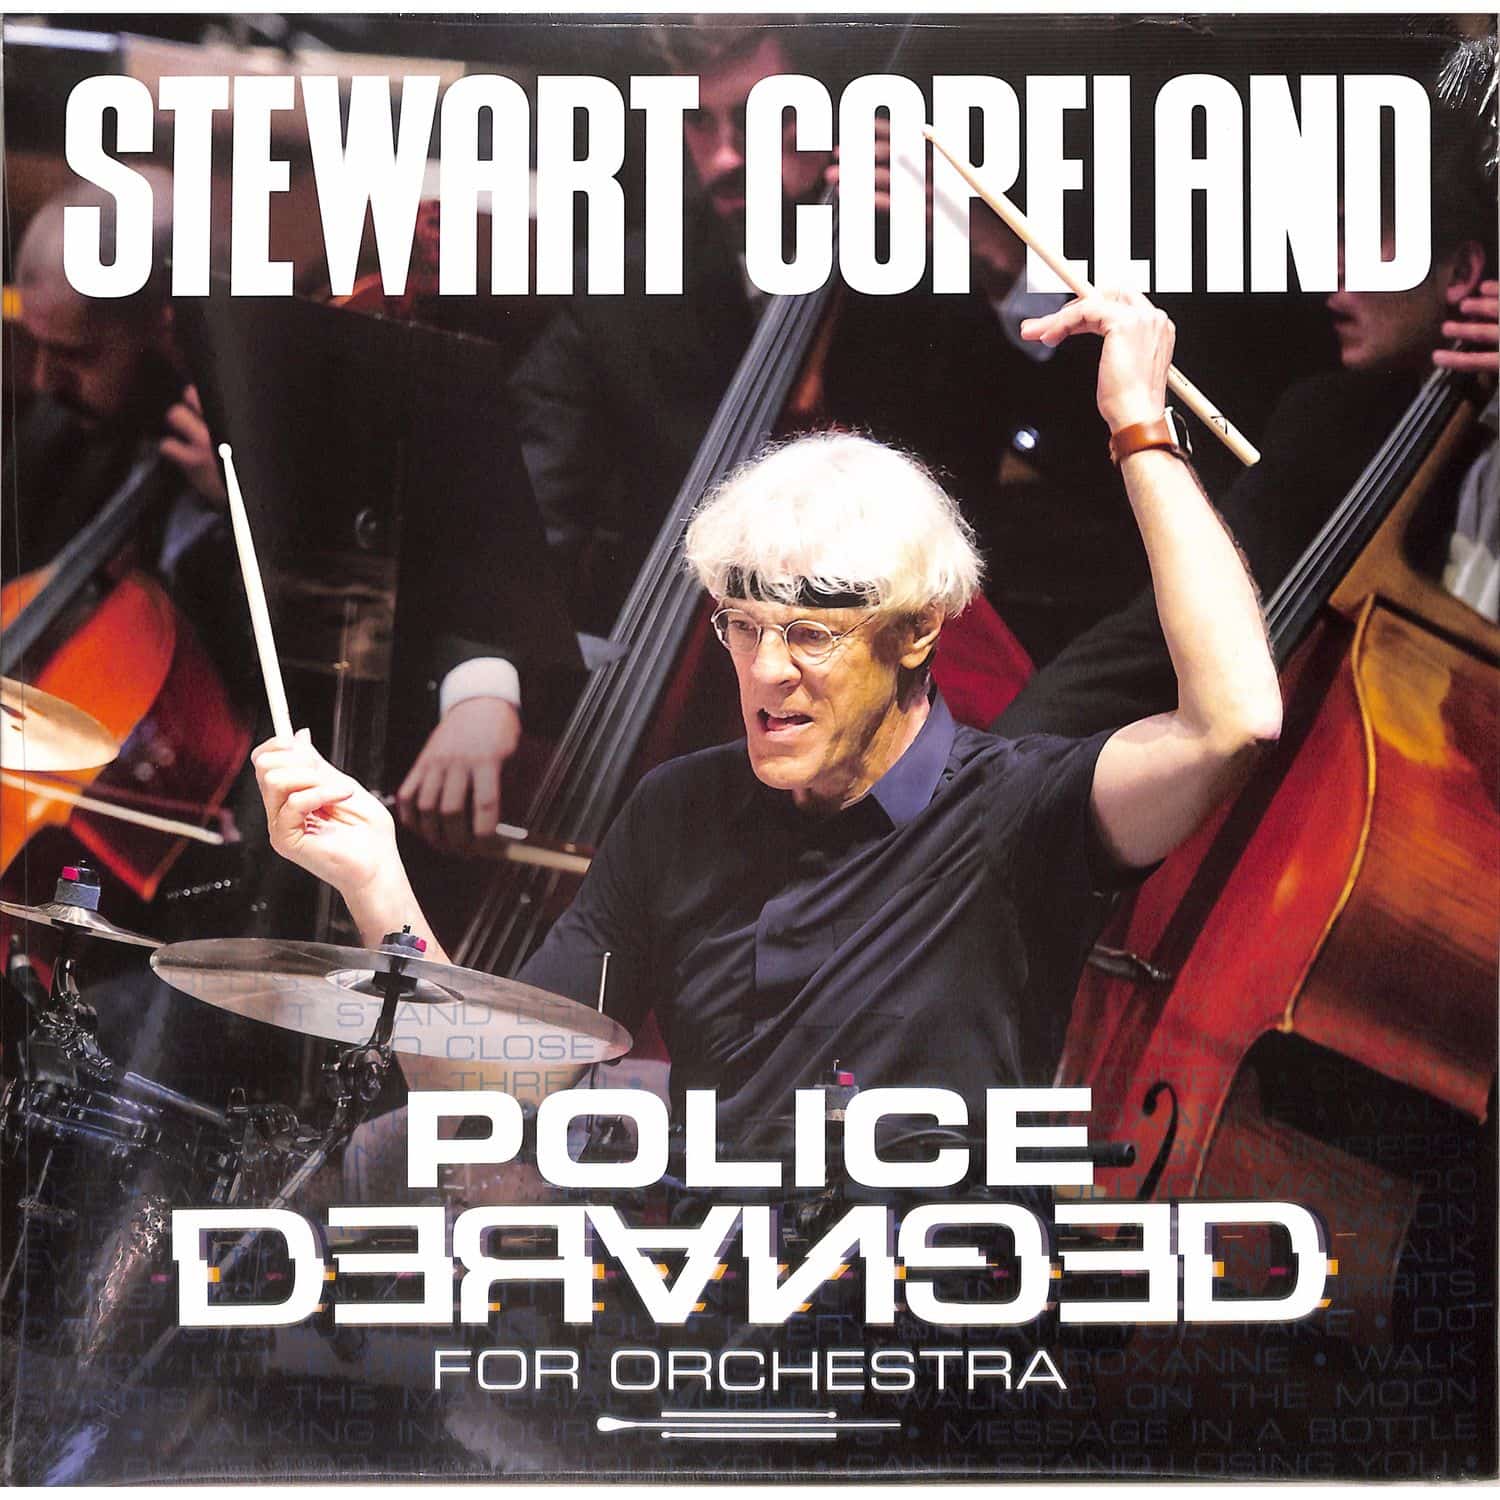 Stewart Copeland - POLICE DERANGED FOR ORCHESTRA 